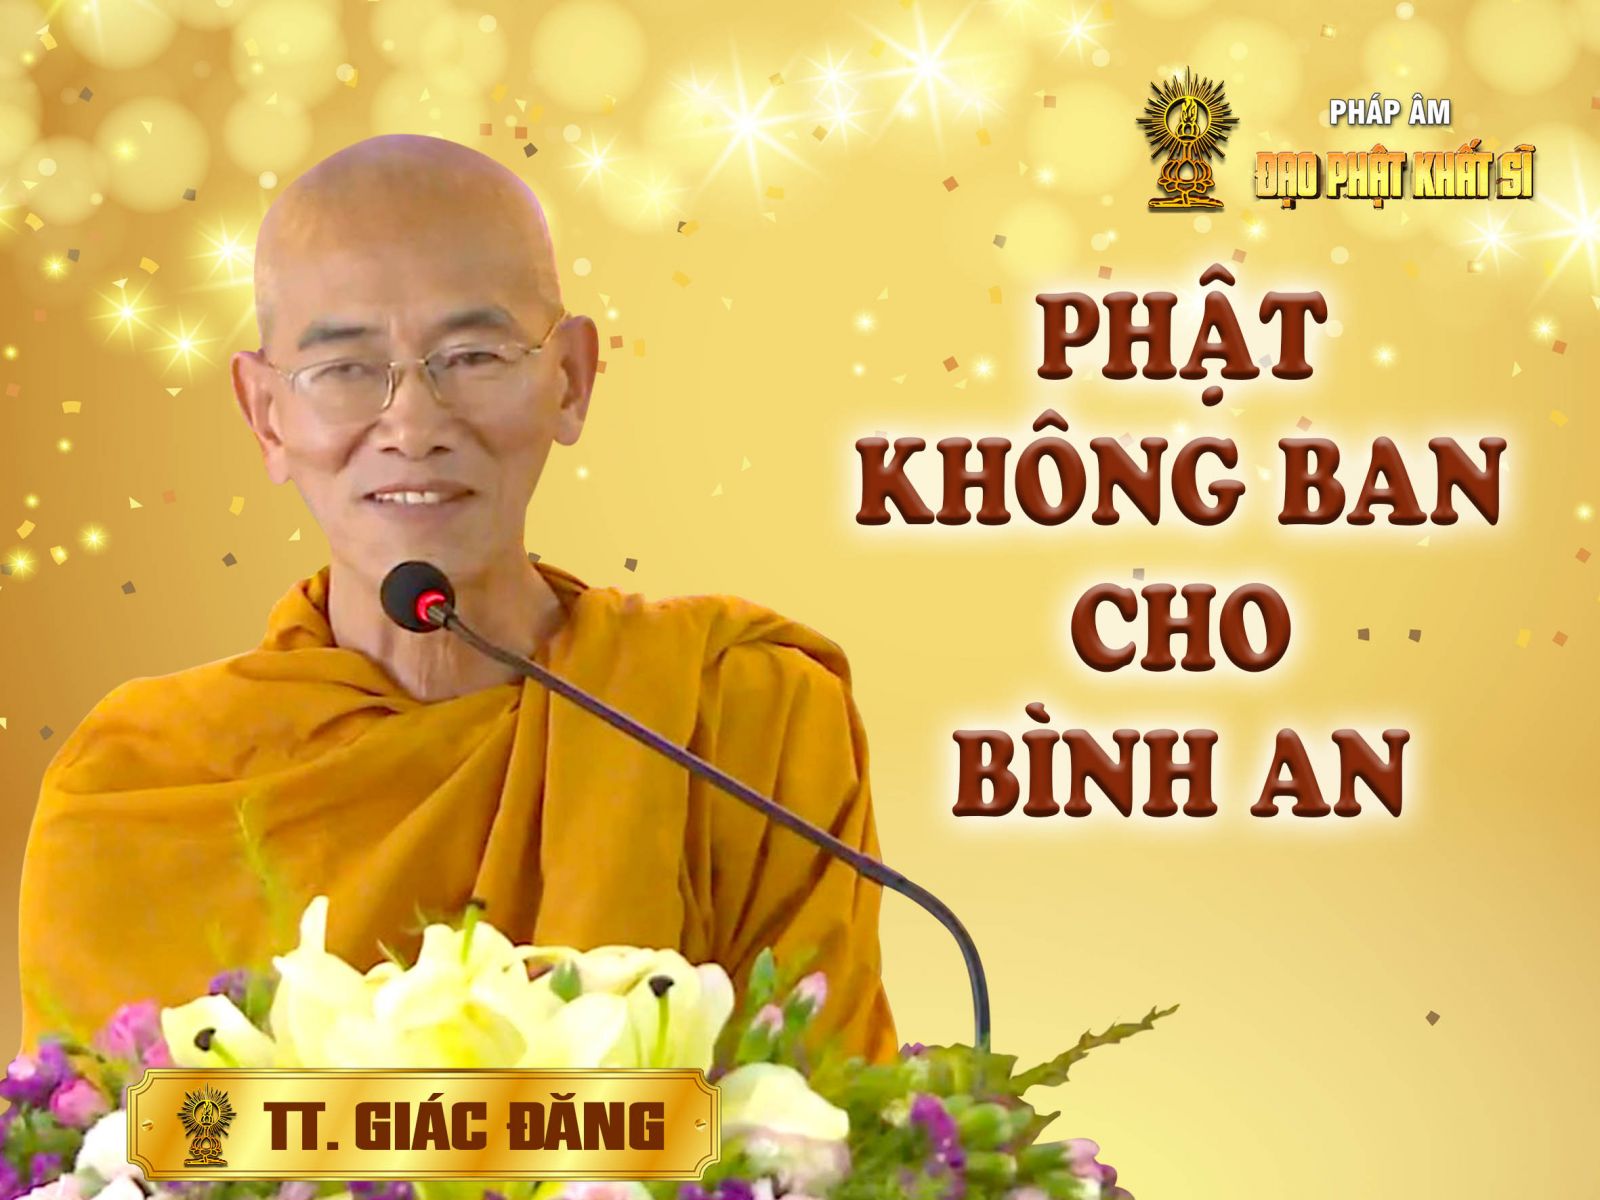 Phật không ban cho bình an